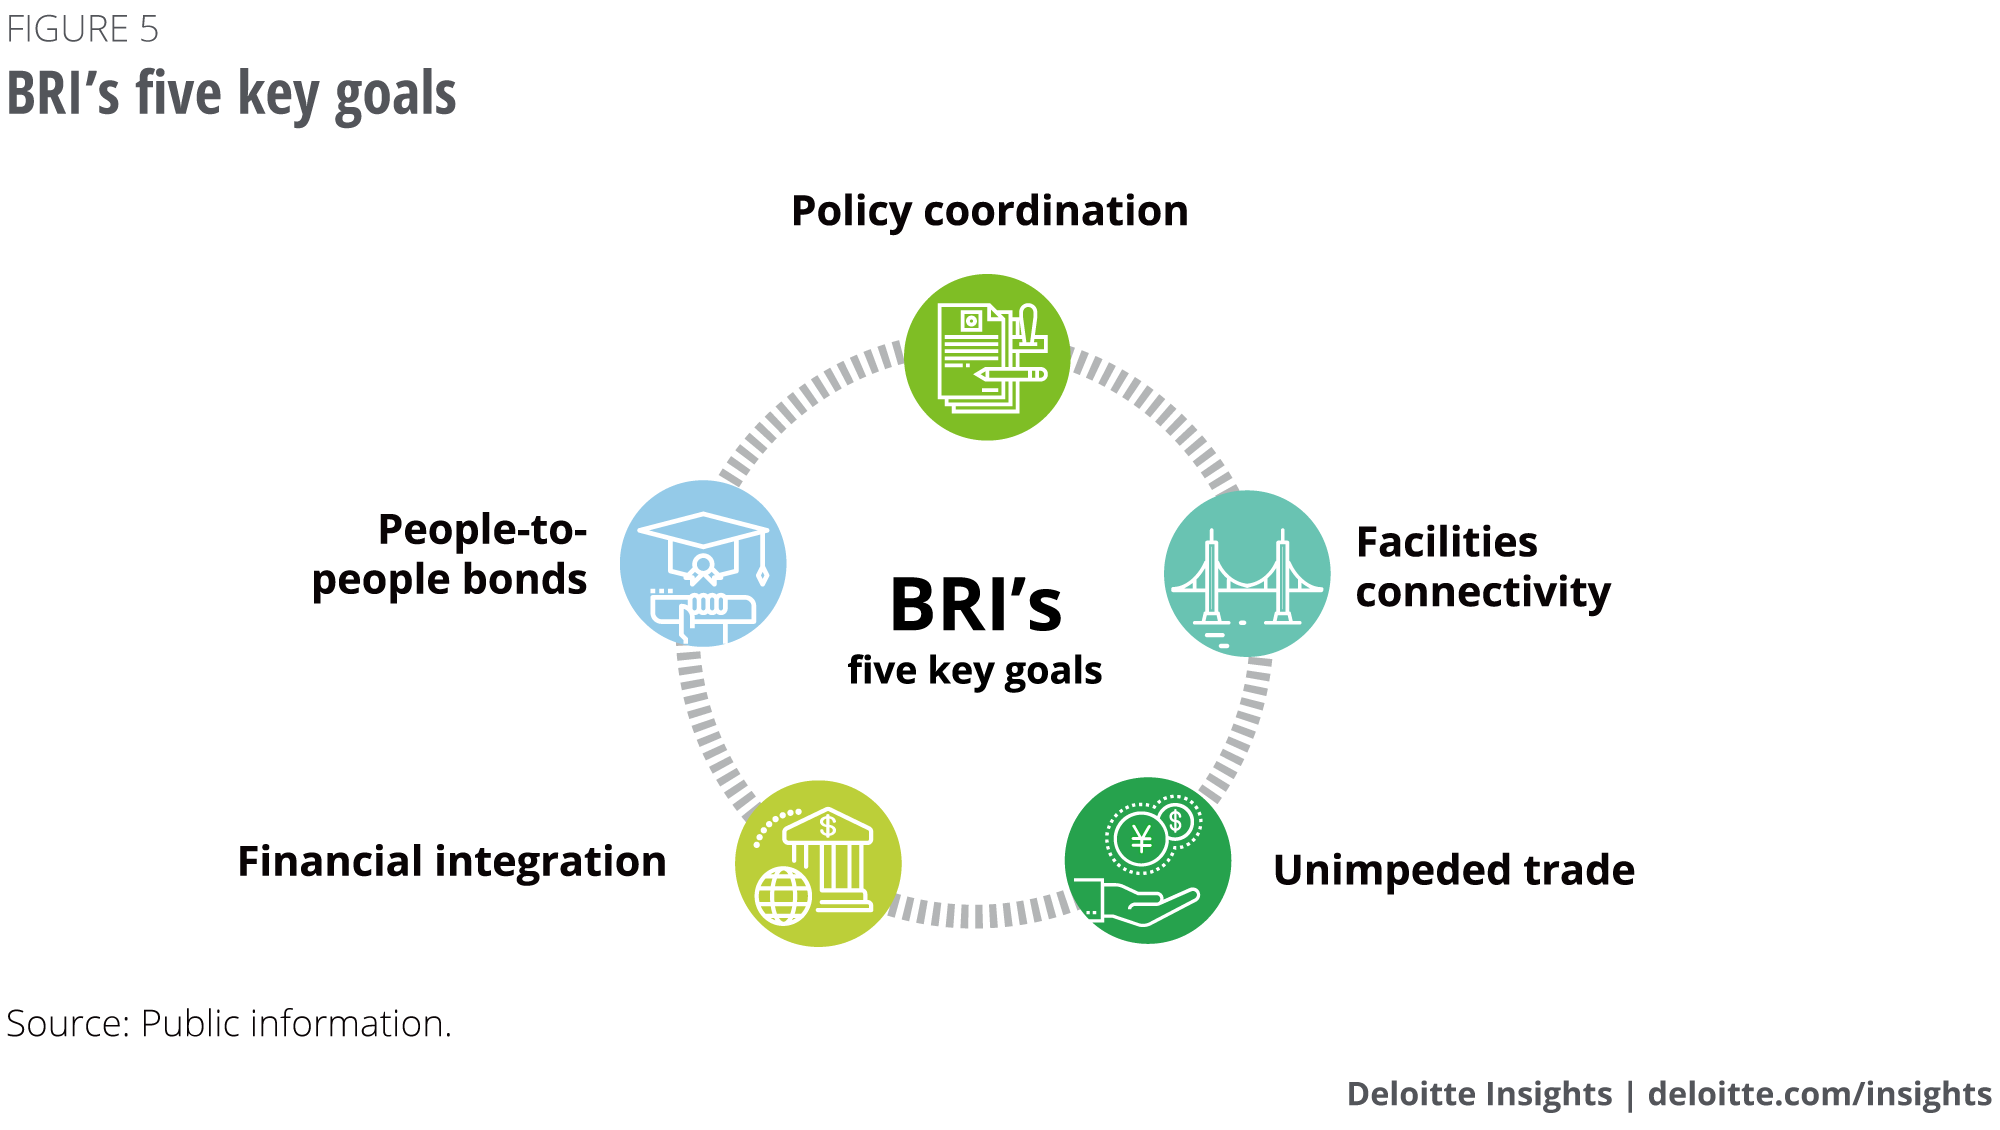 BRI's five key goals